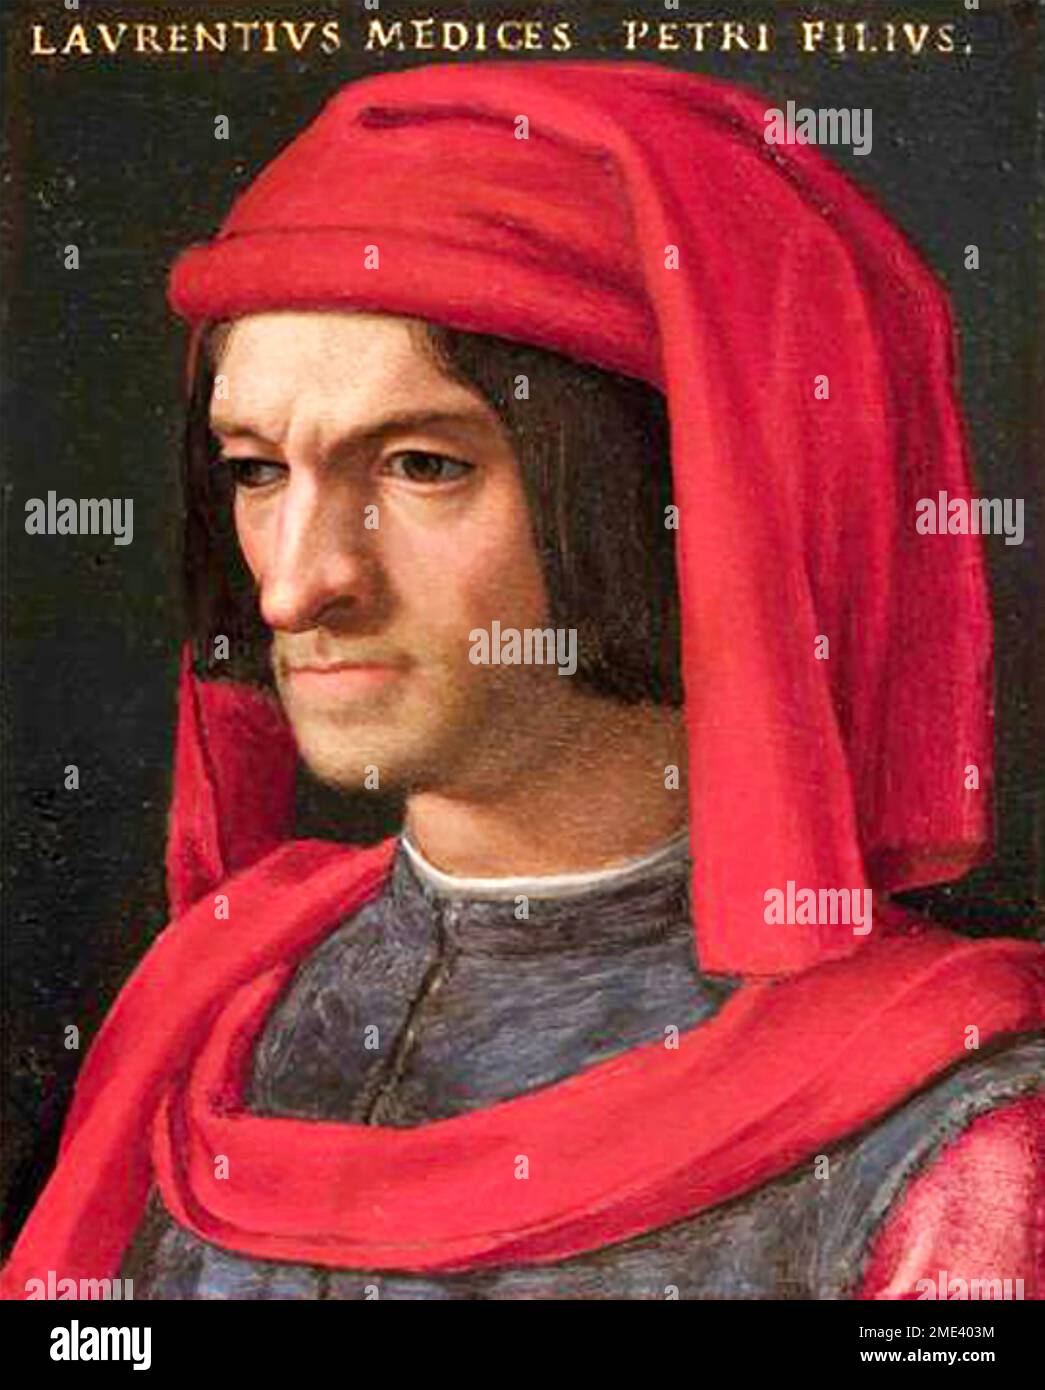 LORENZO de MEDICI (1449-1492) banquier et homme d'État florentin, peint par Agnolo Bronzino vers 1566 Banque D'Images